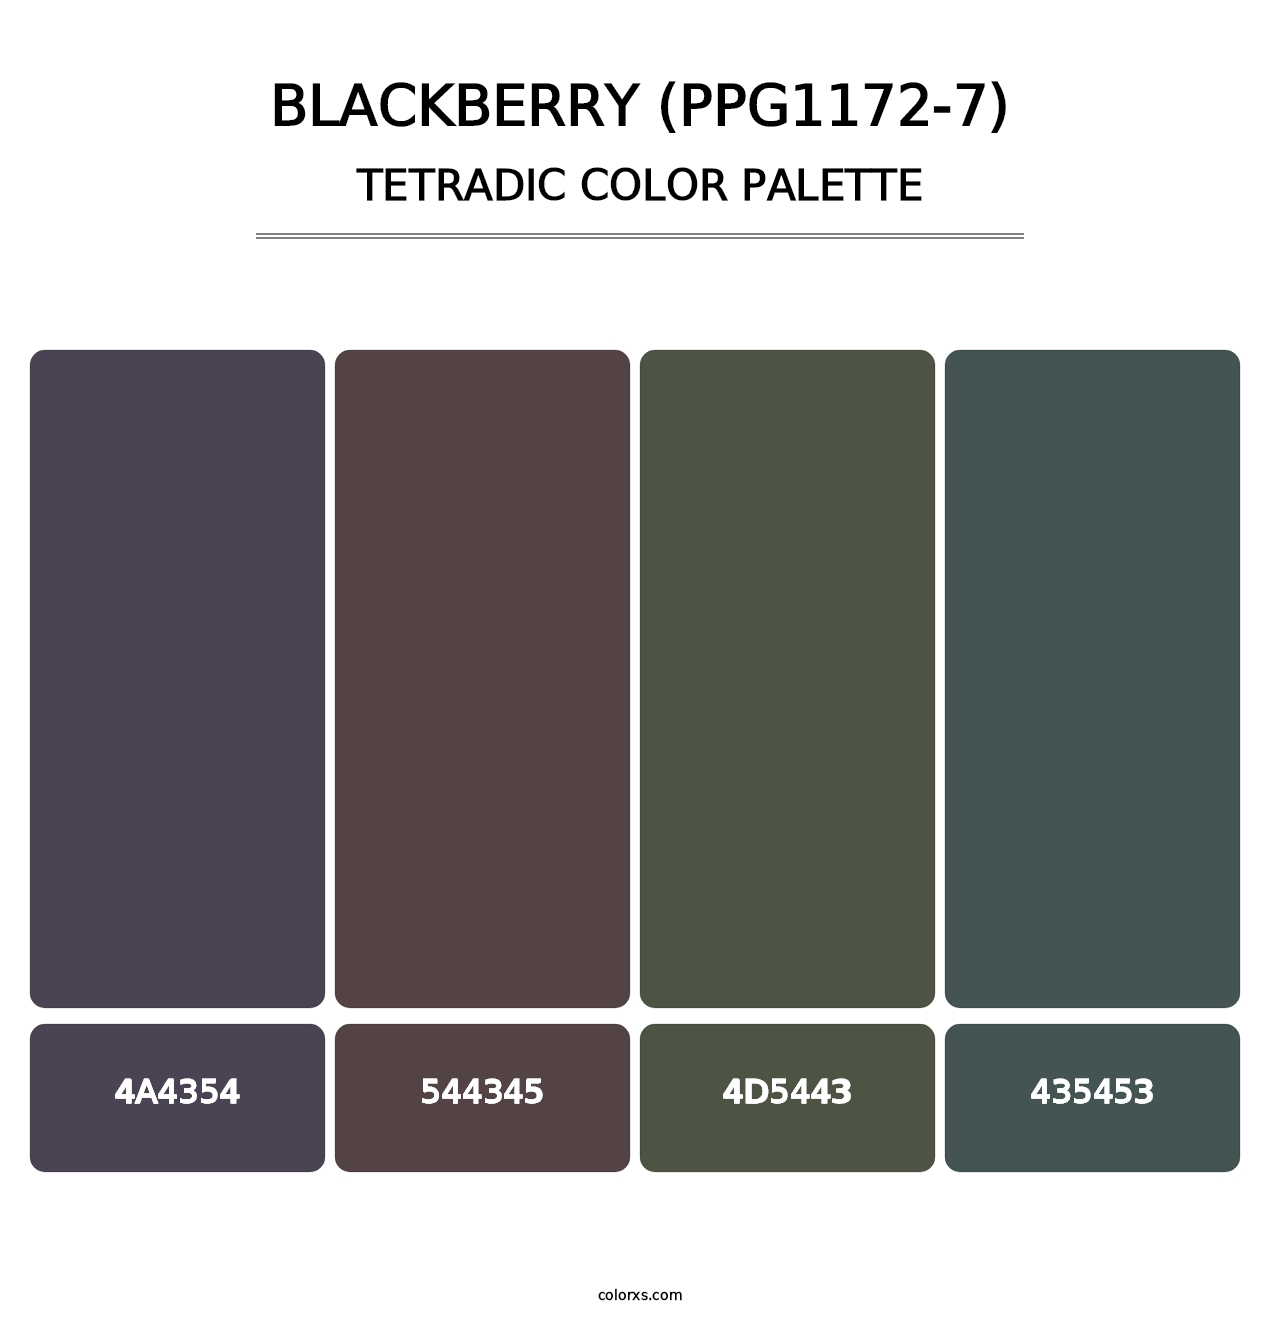 Blackberry (PPG1172-7) - Tetradic Color Palette